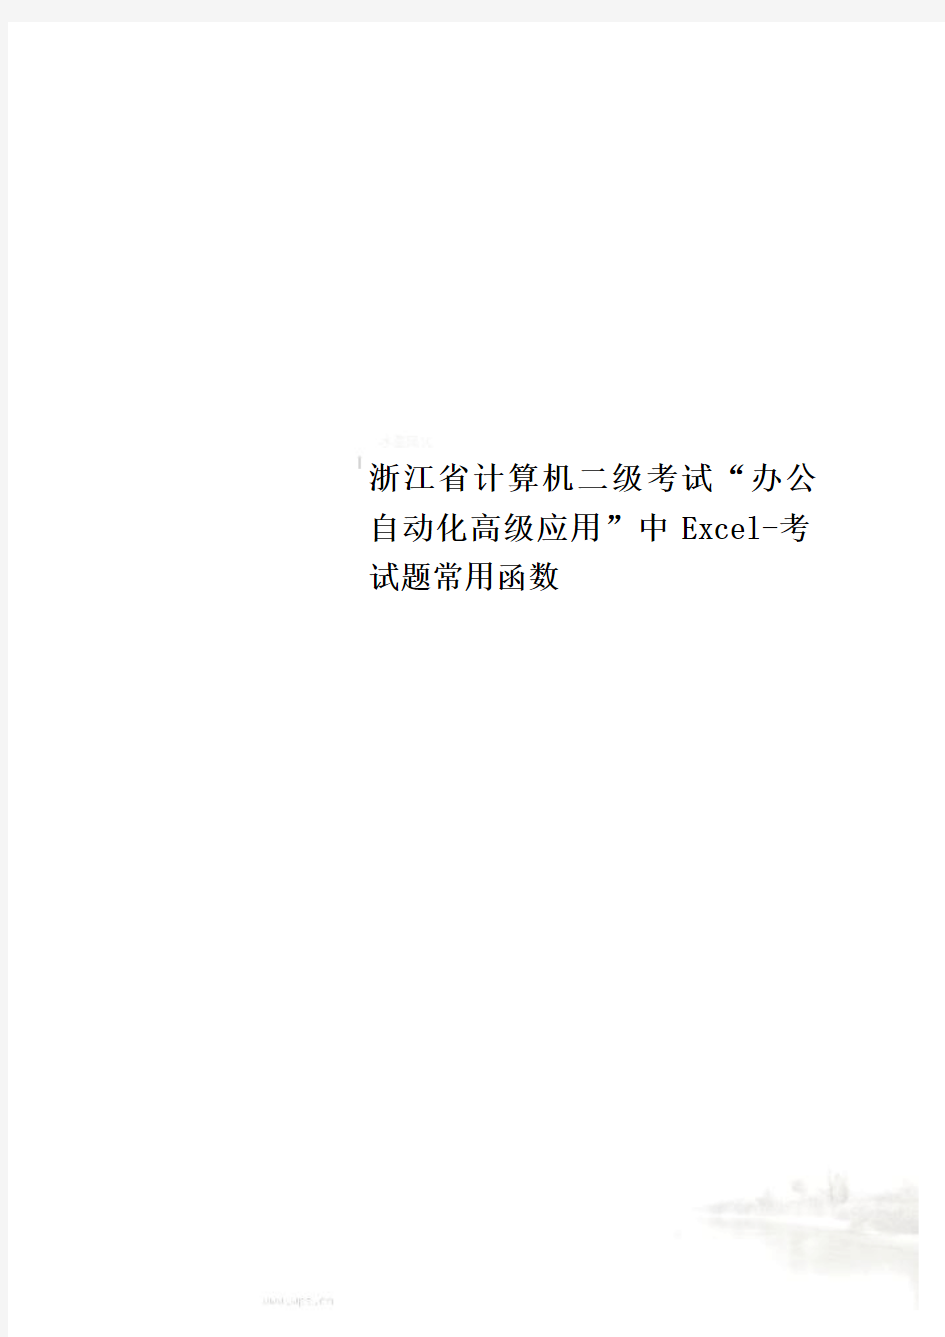 浙江省计算机二级考试“办公自动化高级应用”中Excel-考试题常用函数